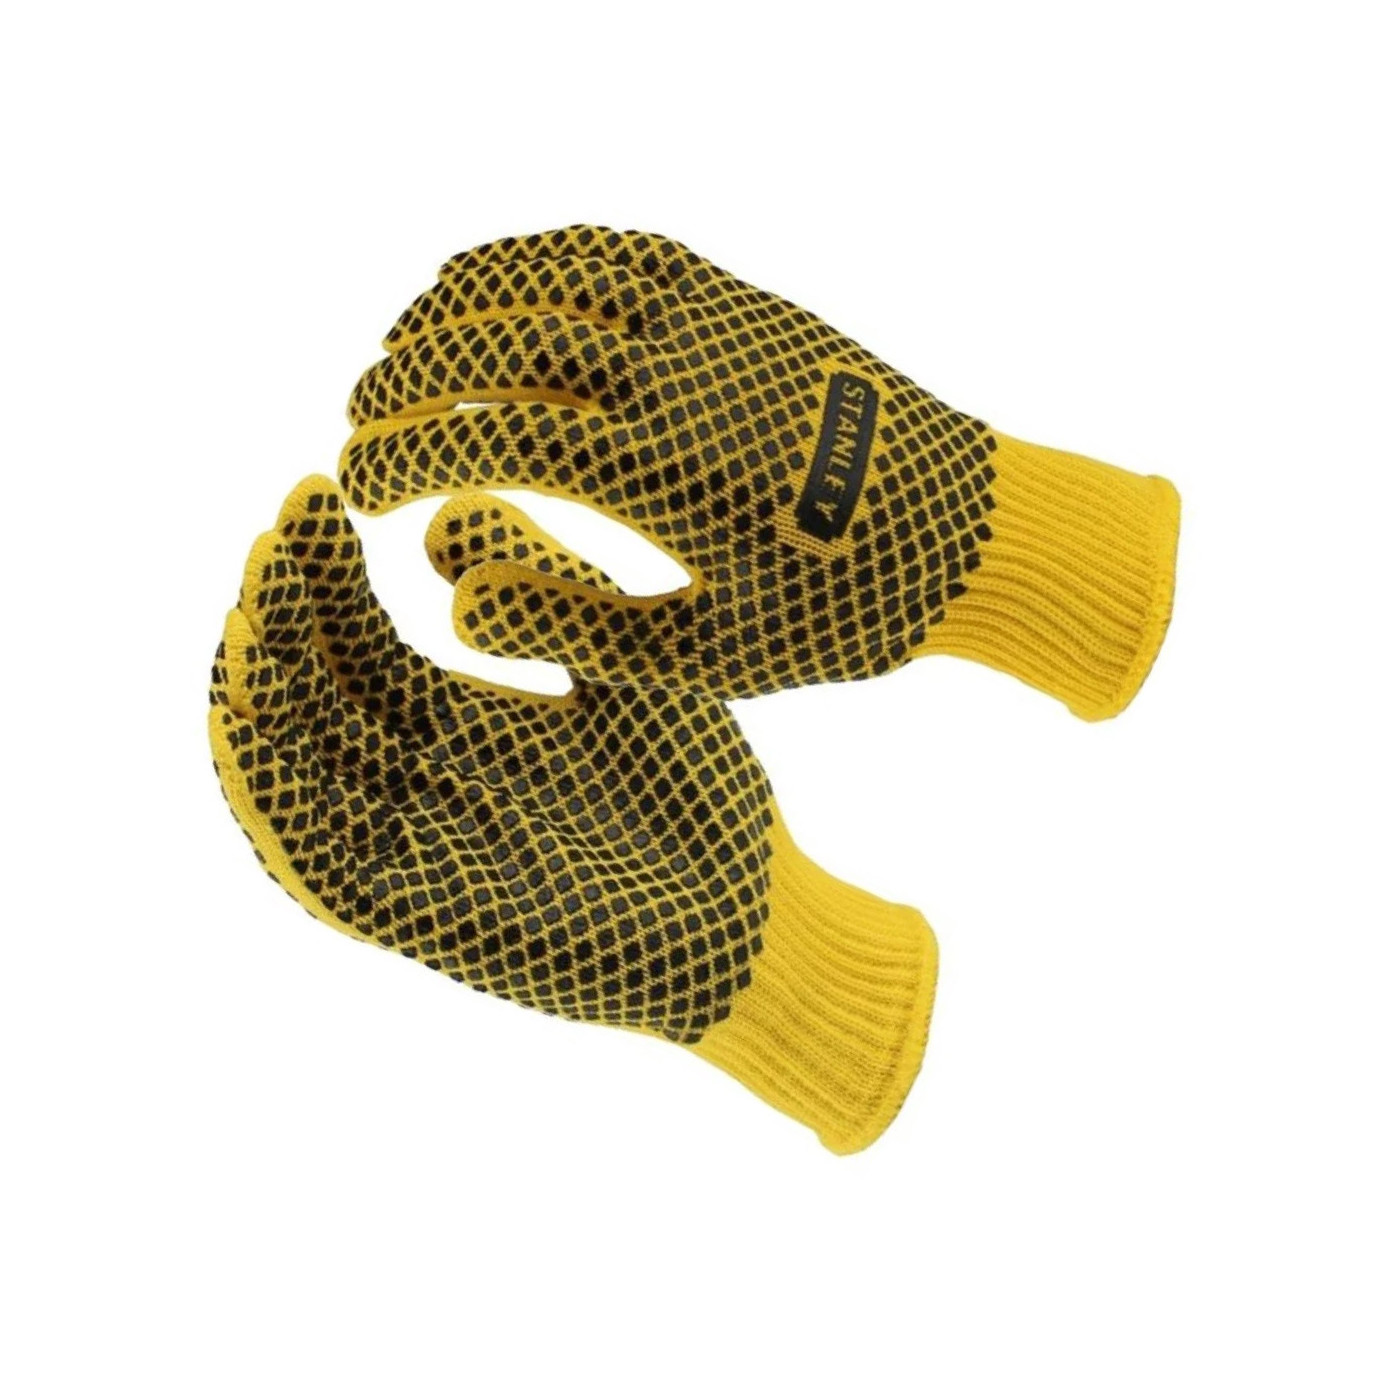 Zestaw rękawic roboczych Stanley (żółty / czarny)